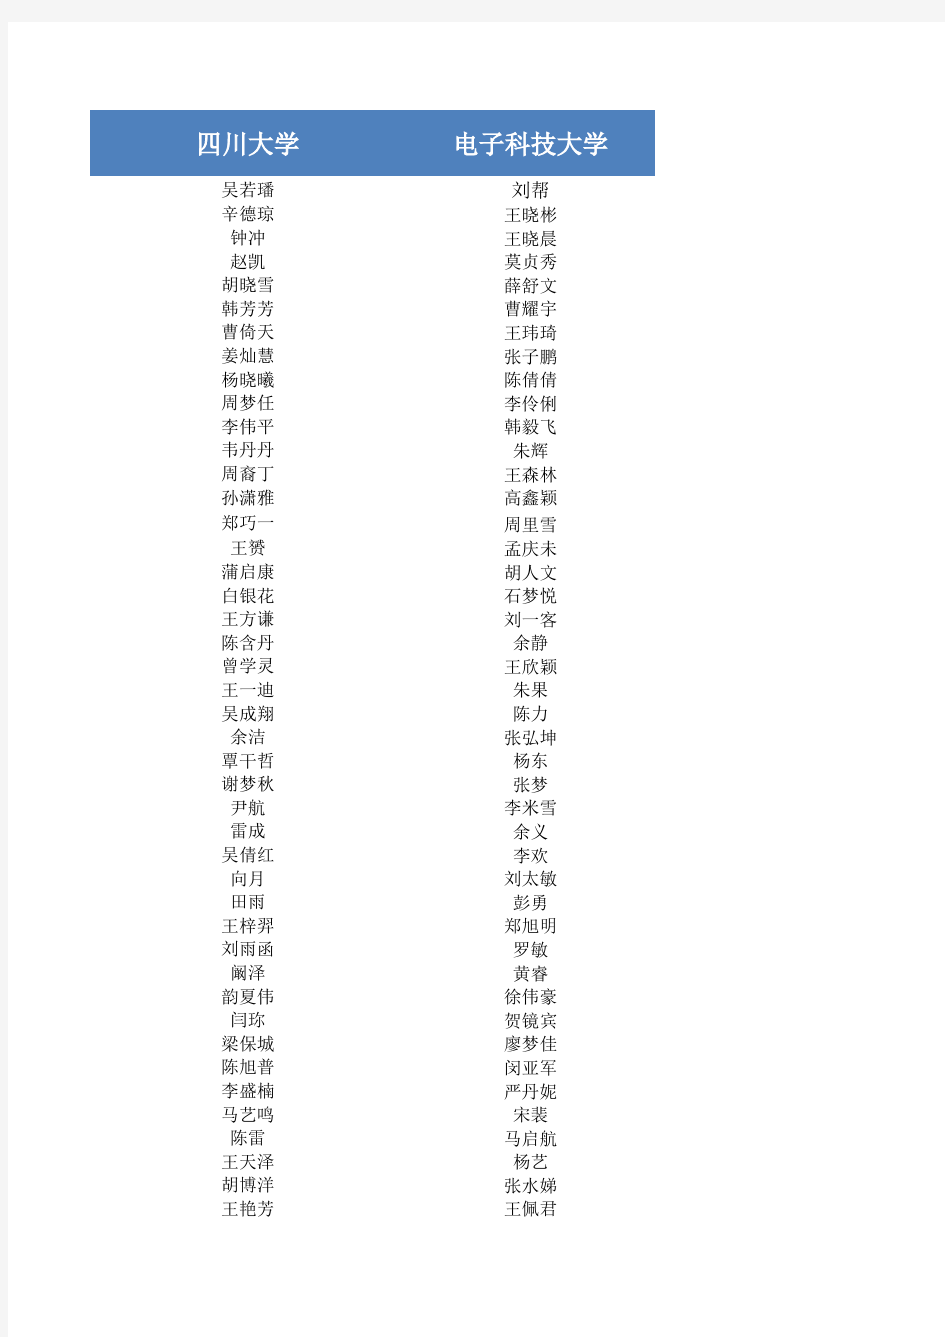 2013年四川省大学生 “综合素质A级证书”合格汇总公示